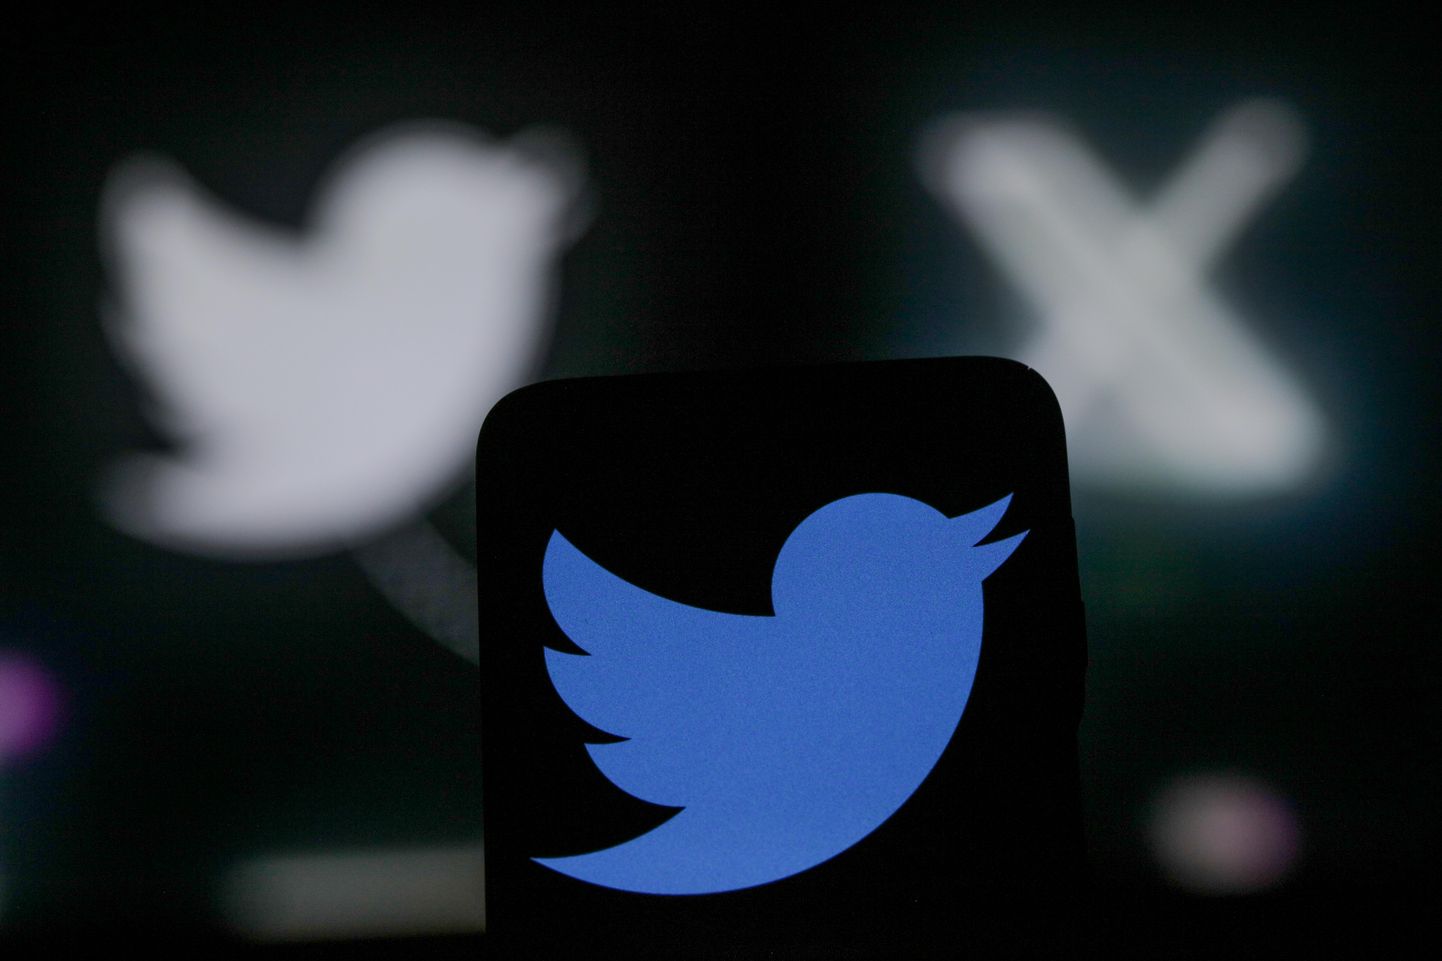 Ligi 200 miljoni aktiivse kasutajaga Twitter (otsetõlkes Säutsla) asendab sinise laulva linnukese logo must-valge sümboliga 𝕏.